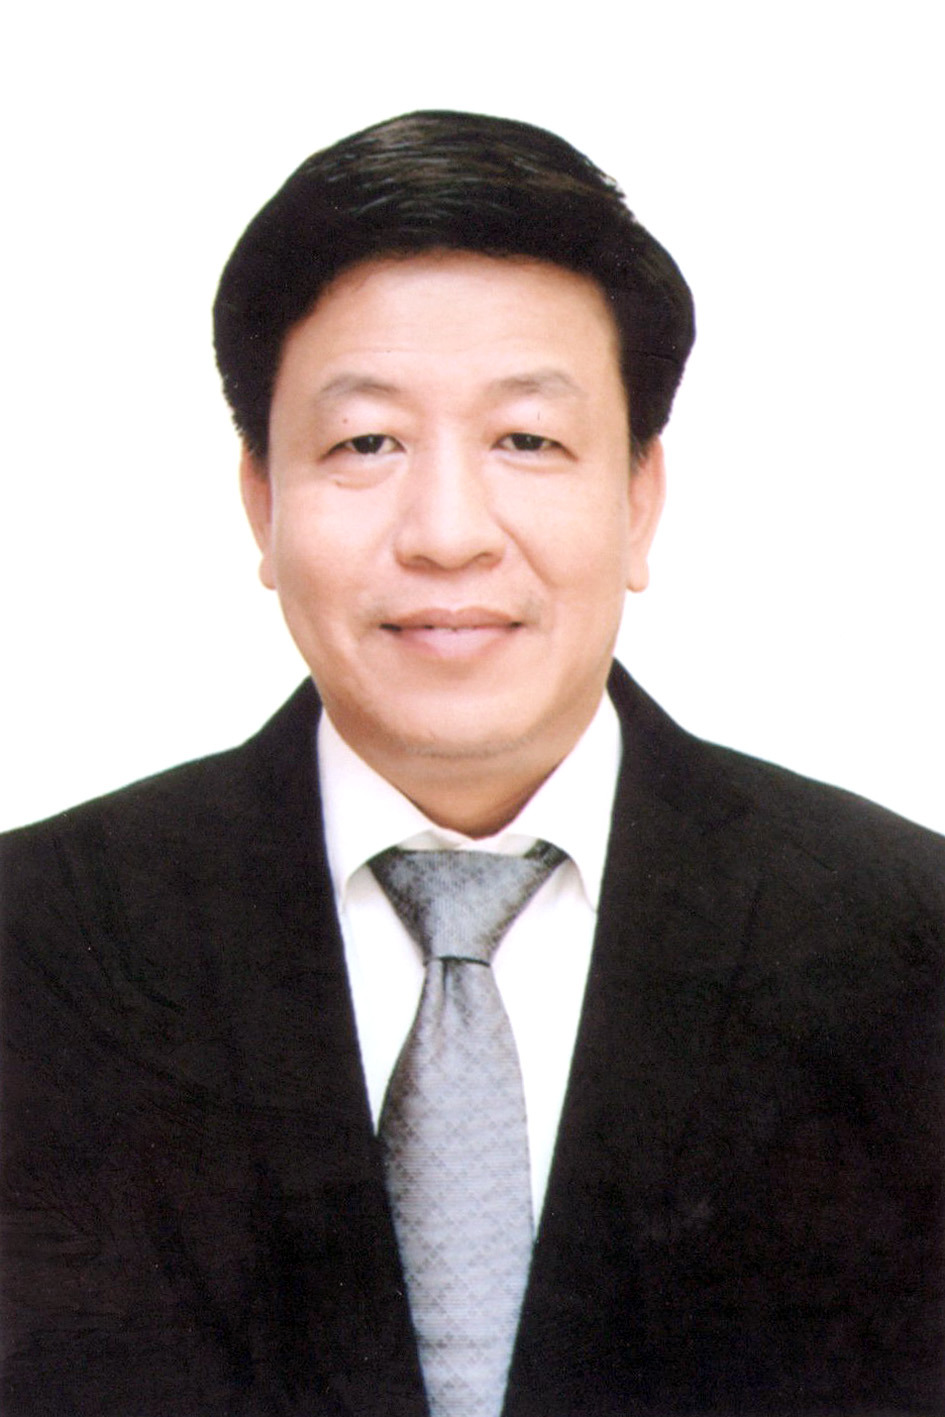 Chương trình hành động của Phó Chủ tịch UBND TP Hà Nội Dương Đức Tuấn, ứng cử viên đại biểu HĐND TP Hà Nội nhiệm kỳ 2021 - 2026 - Ảnh 1